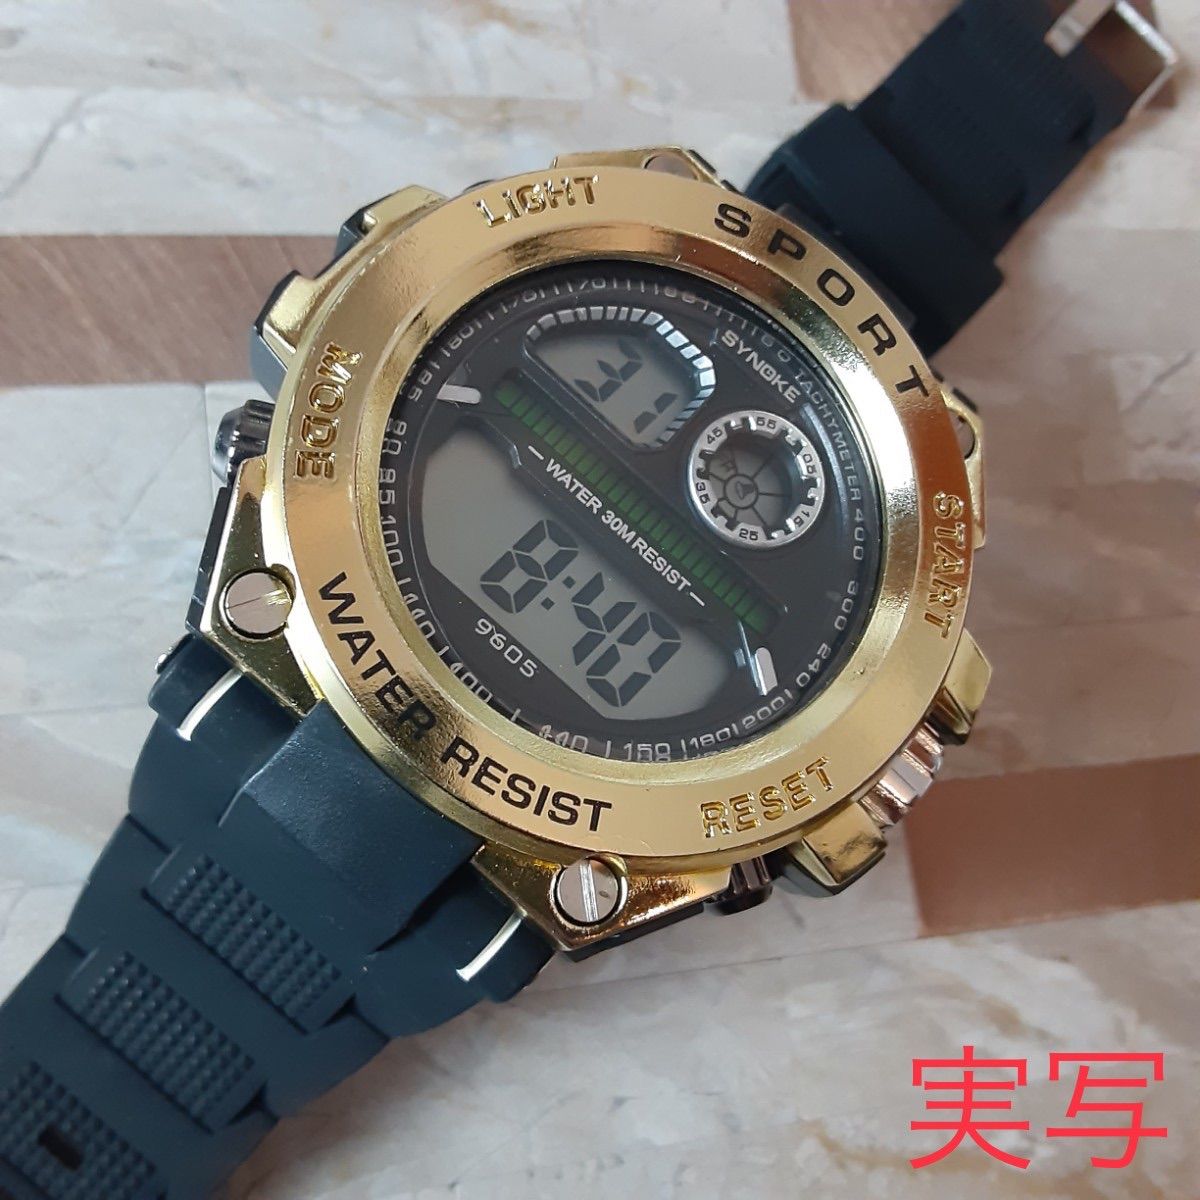 16送料込 海外 SINOKE 腕時計デジタル 多機能 LED ブラックゴールド-5